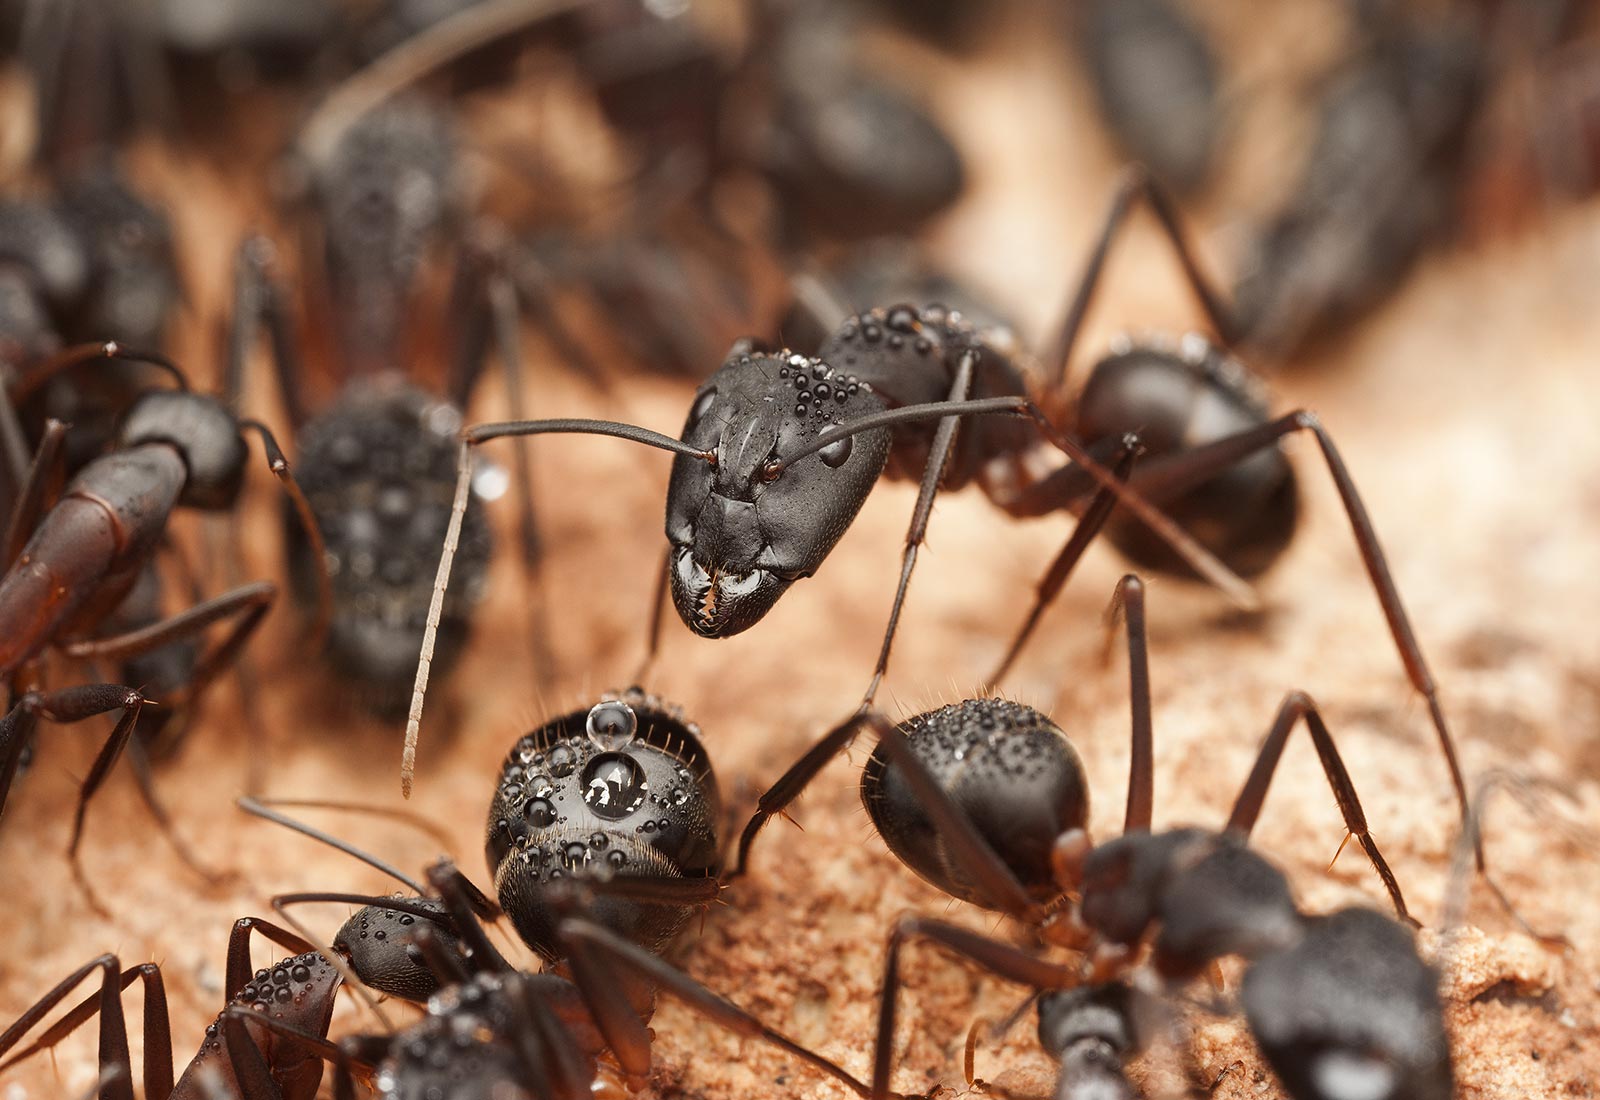 Odorous Ants